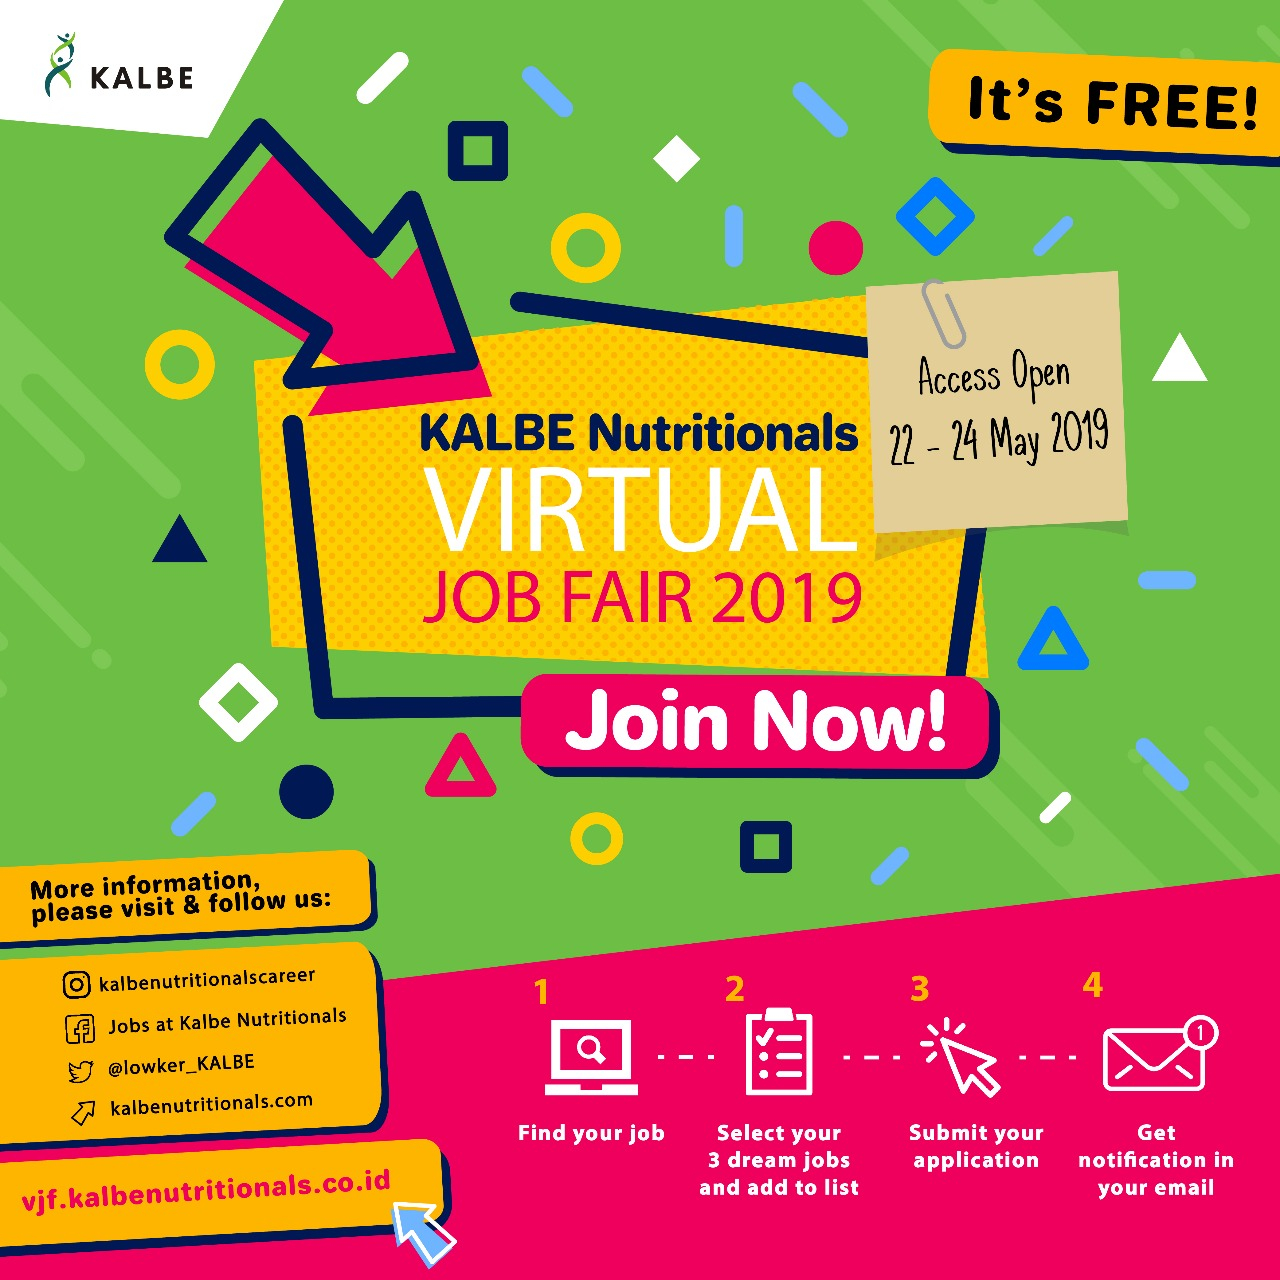 Kalbe Nutritionals Virtual Job Fair (Online Job Fair) tanggal 22-24 Mei 2019